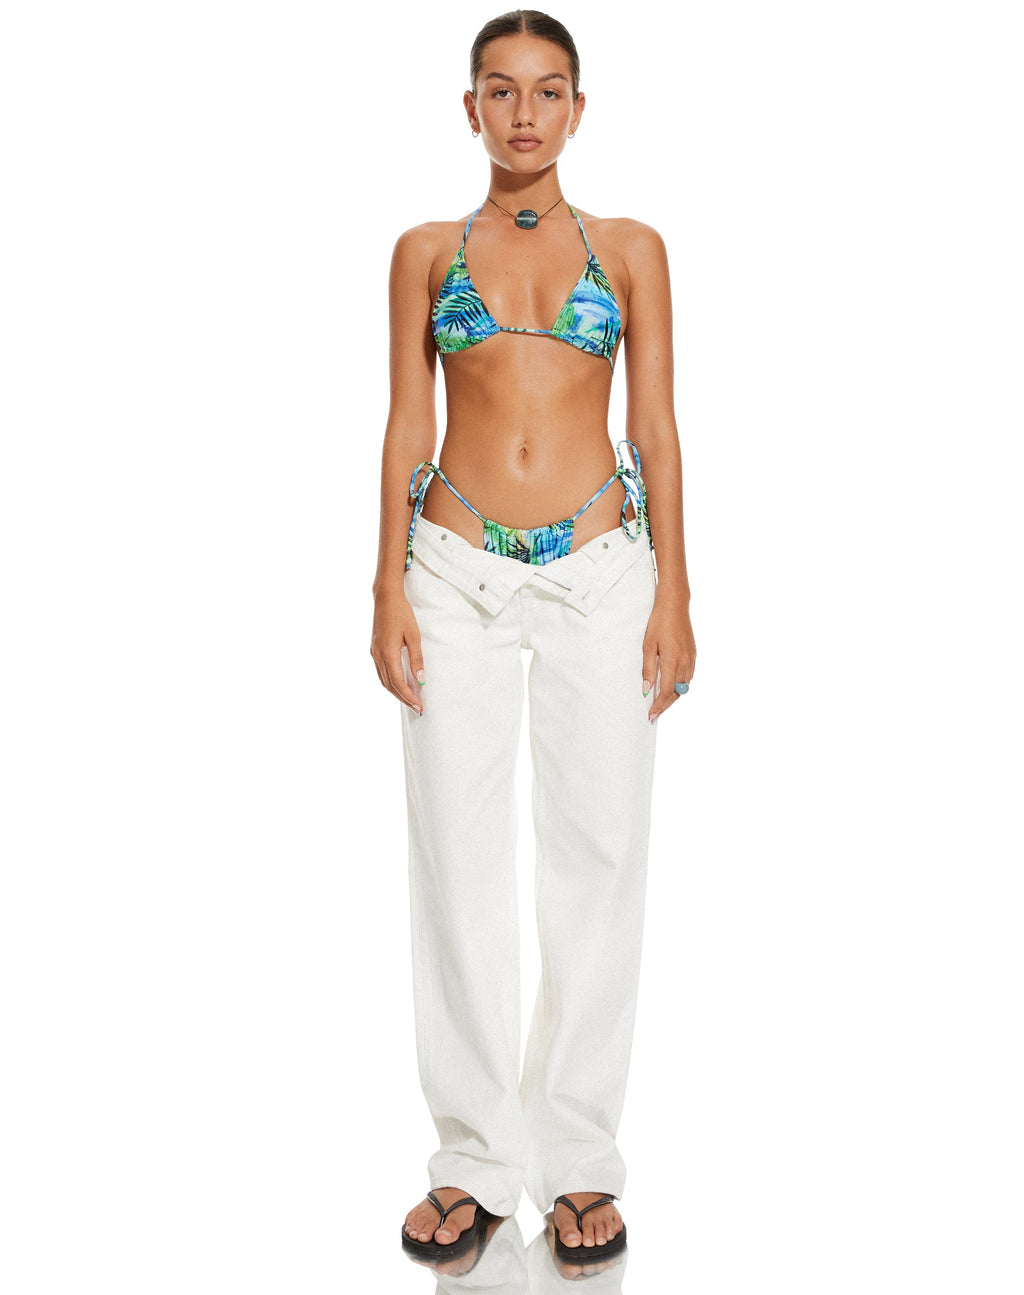 MOTEL X BARBARA Pami Bikini Top in Tropical Palm